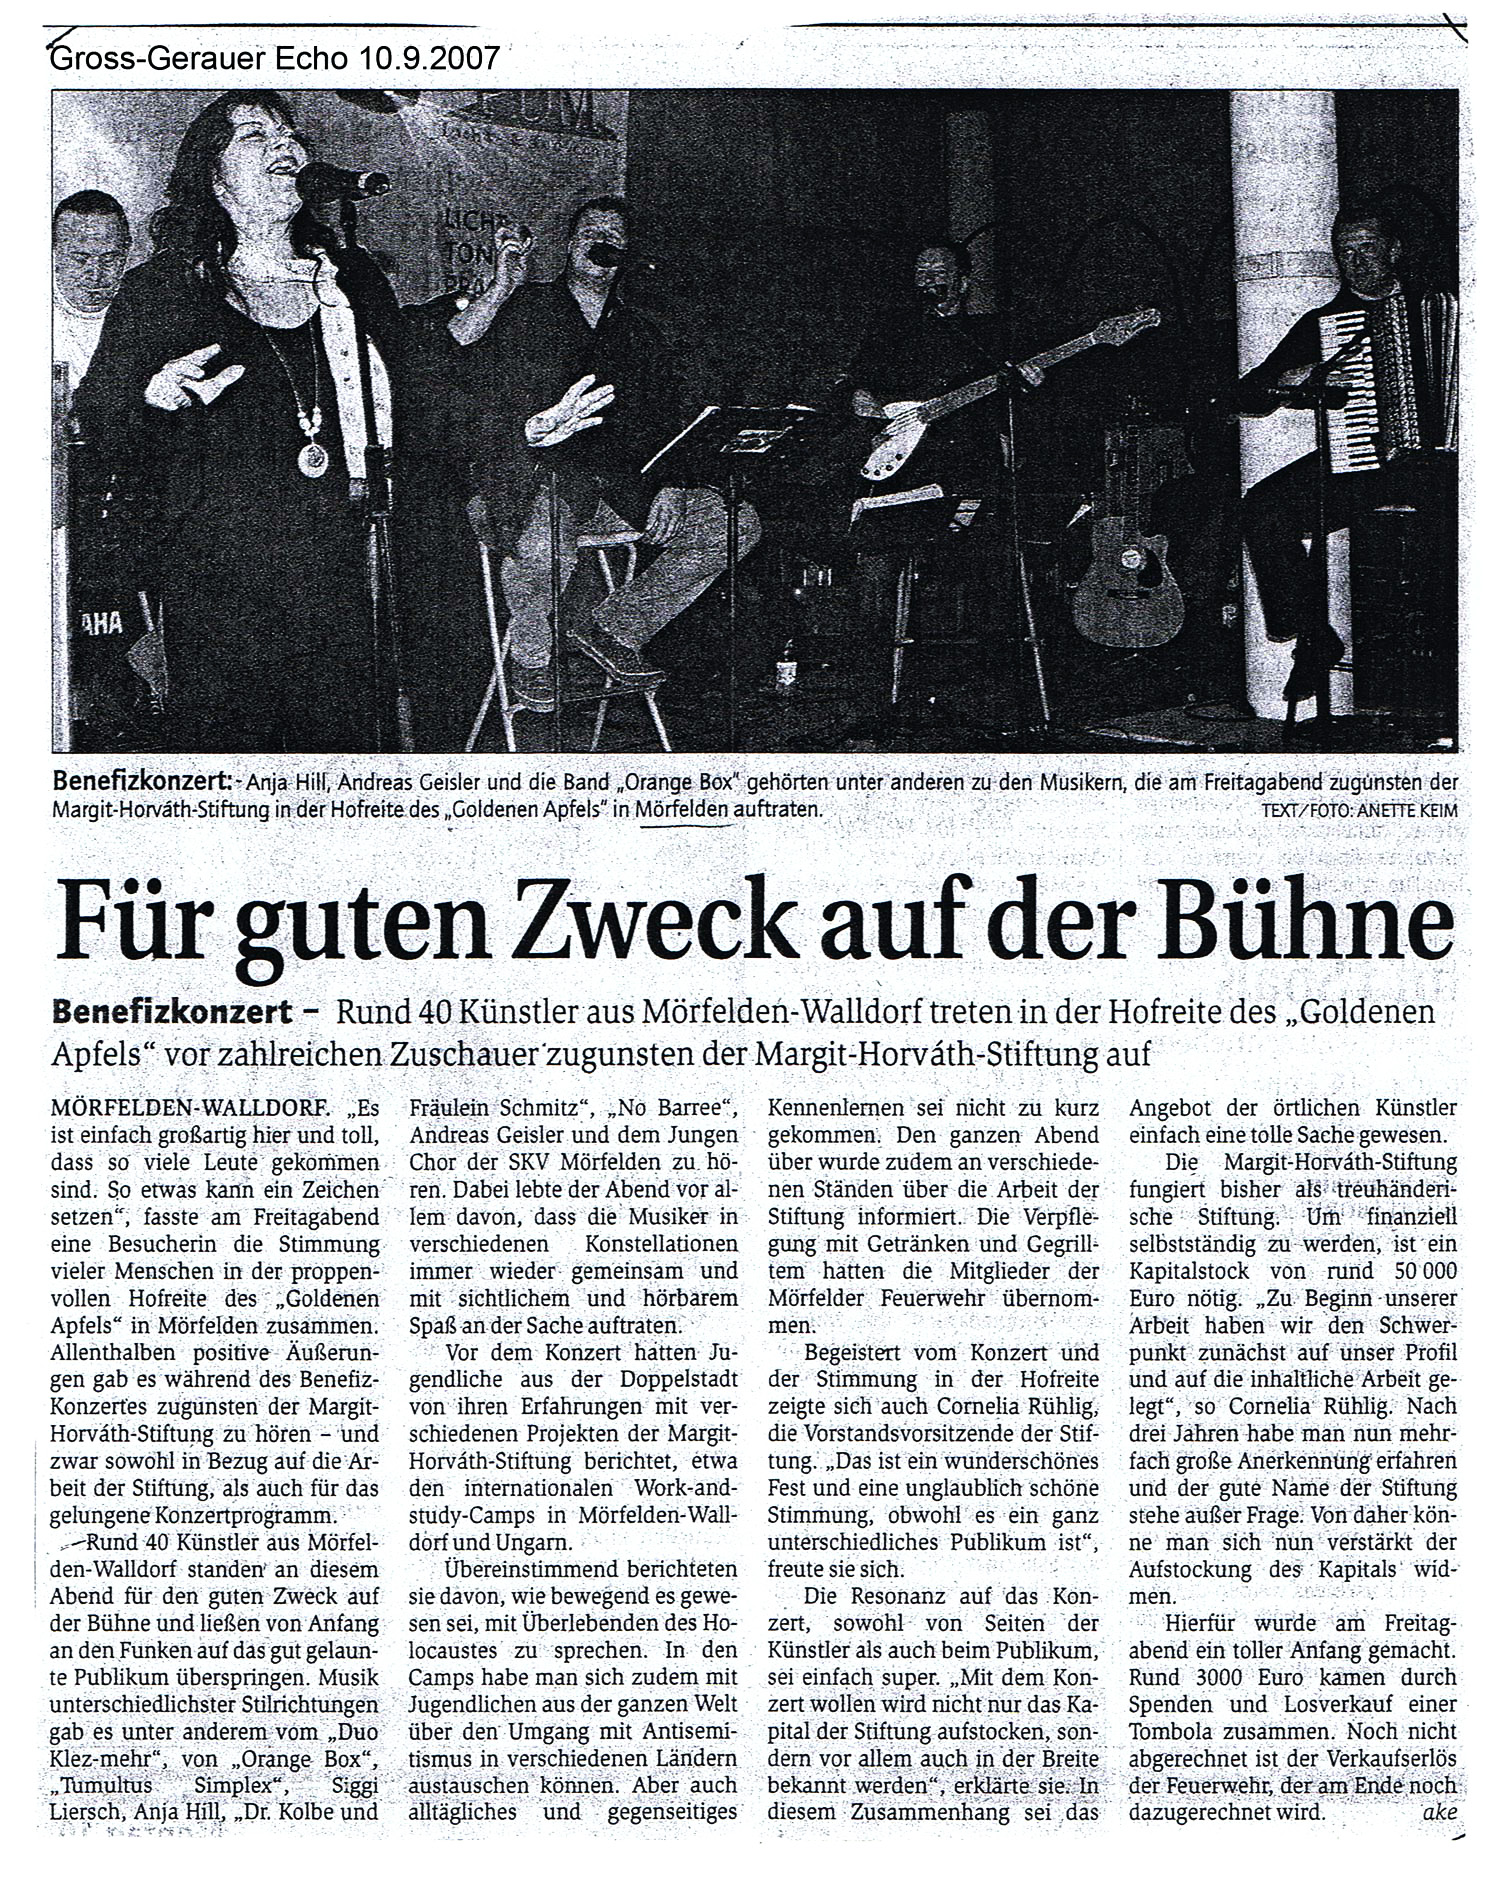 Zeitungsbericht über das Benefizkonzert aus dem "Groß-Gerauer Echo" vom 10. September 2007